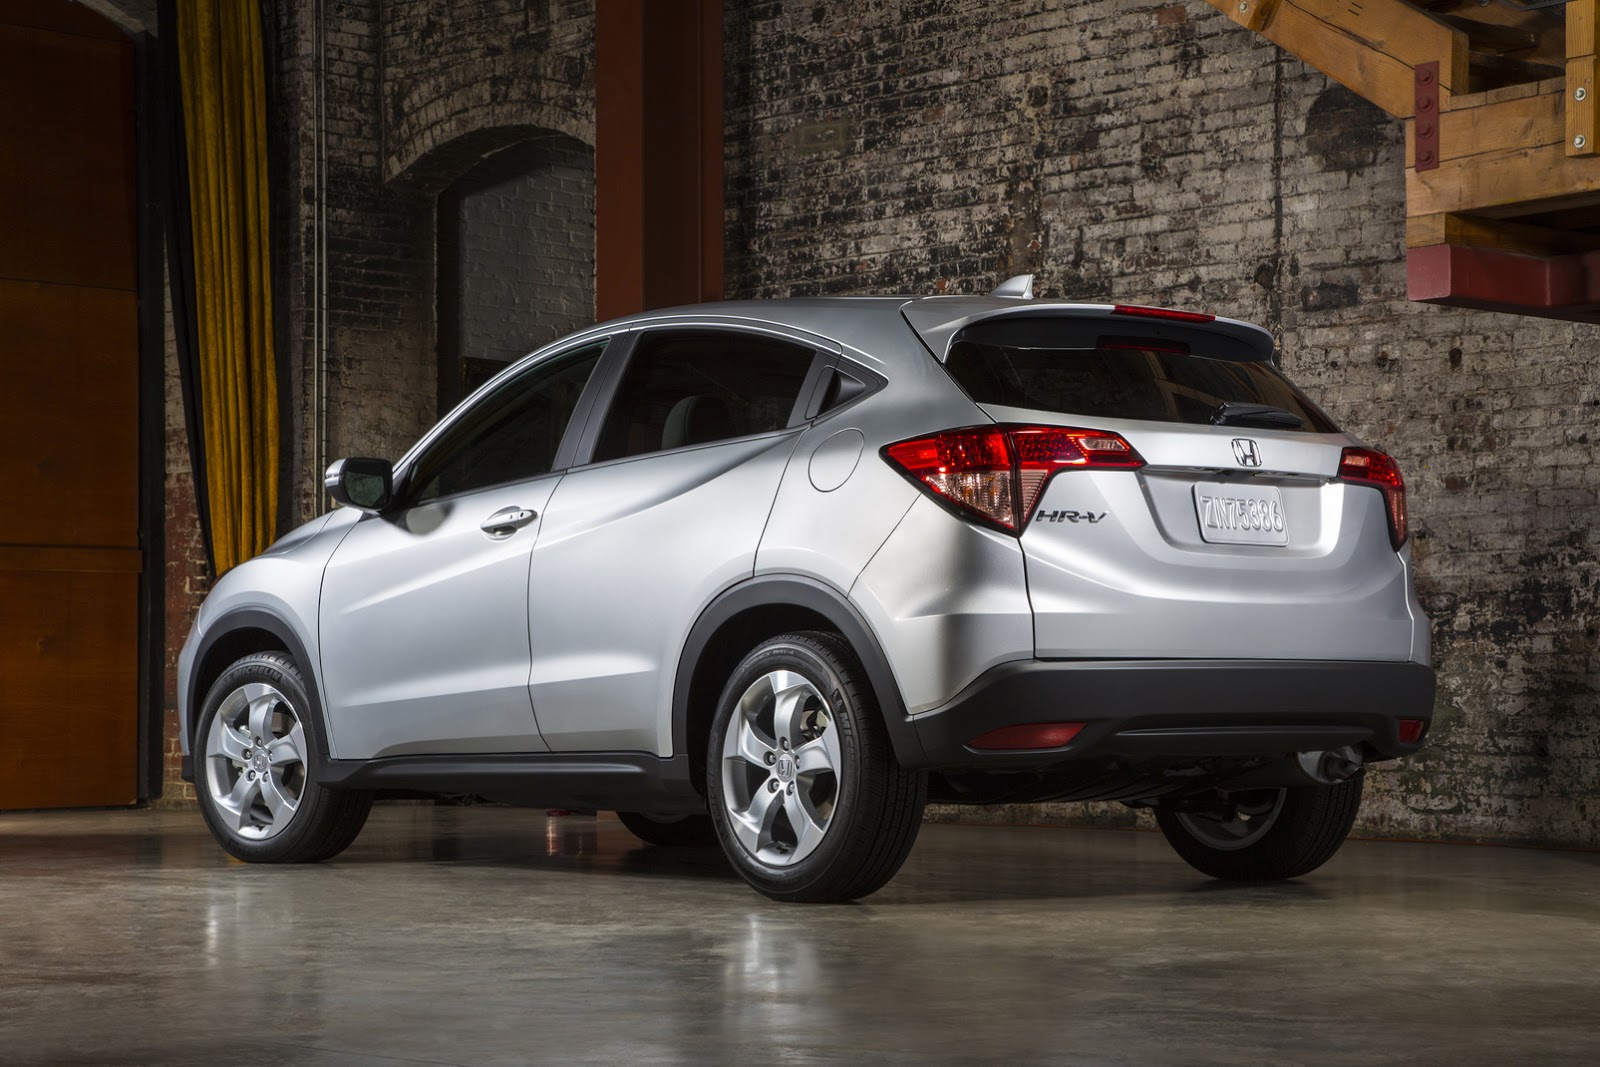 New 2016 Honda  HR V  Enters Small Crossover  Segment Gets a 